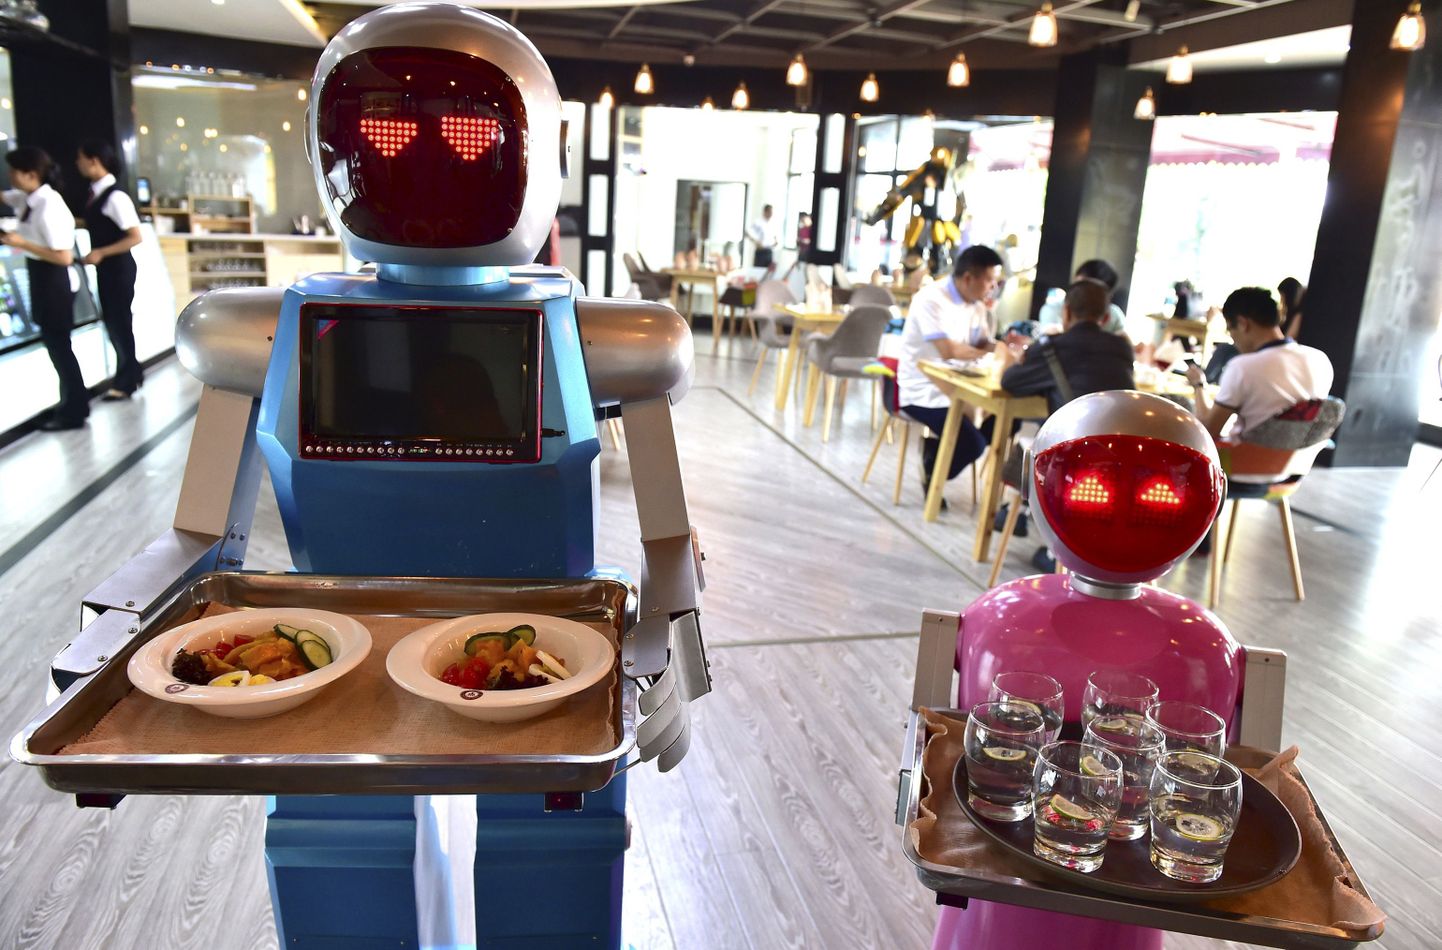 Kui kiirtoidurestoranide töötajaid ohustavad eelkõige makseterminalid ja telefonide nutirakendused, mis muudavad tasumise lihtsamaks, siis Hiinas asendavad ka ettekandjaid robotid, kes viivad ise toidu lauale.